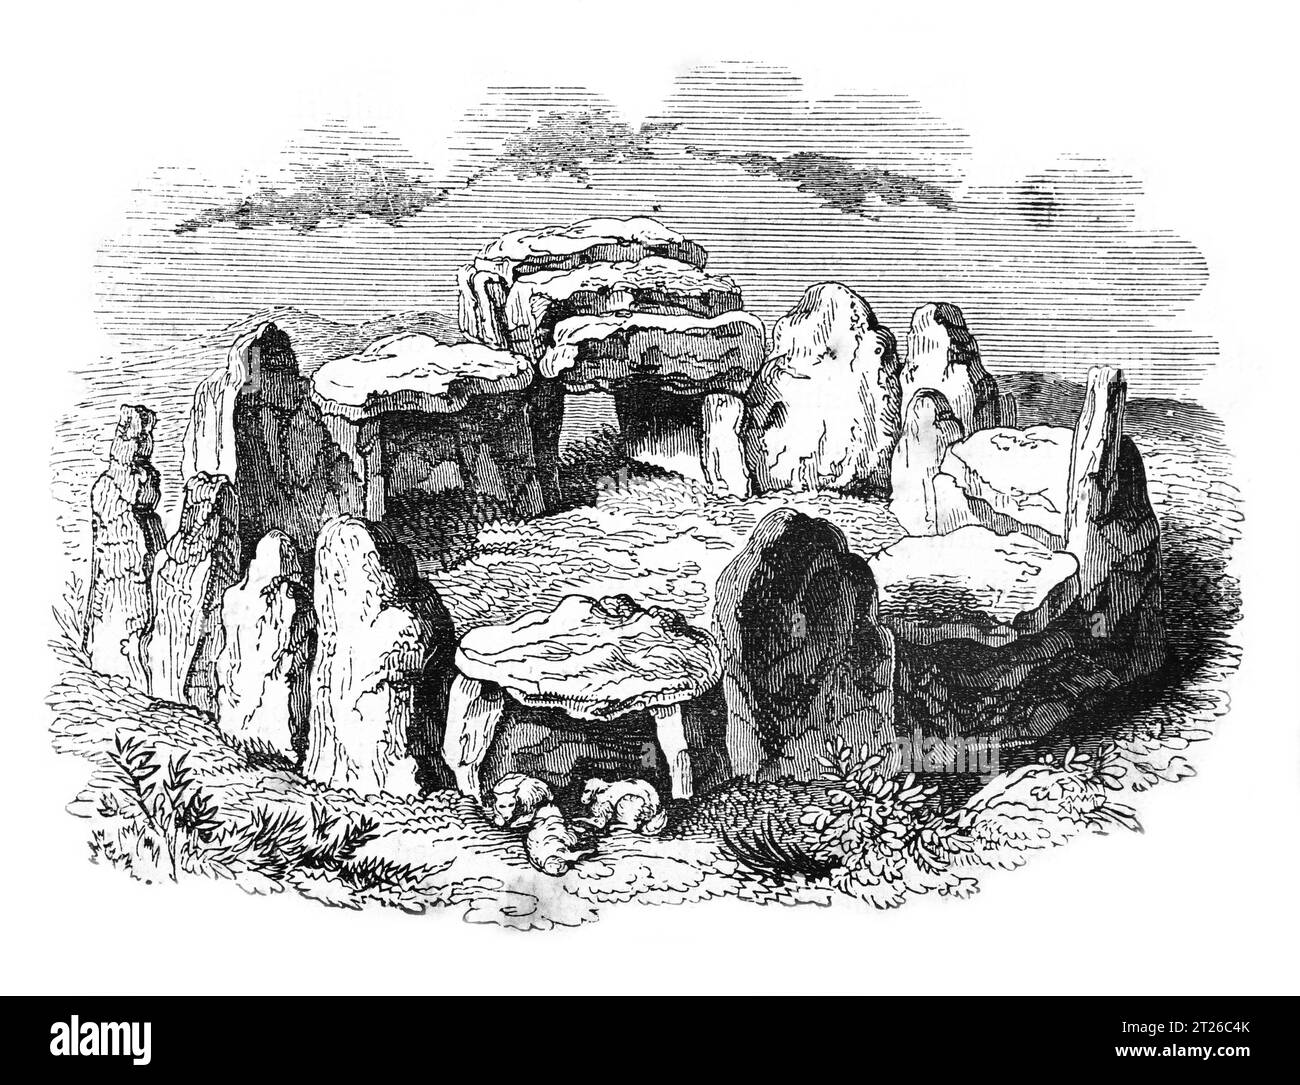 Druidical Circle of Jersey. Ilustración en blanco y negro de la 'Vieja Inglaterra' publicada por James Sangster en 1860. Foto de stock